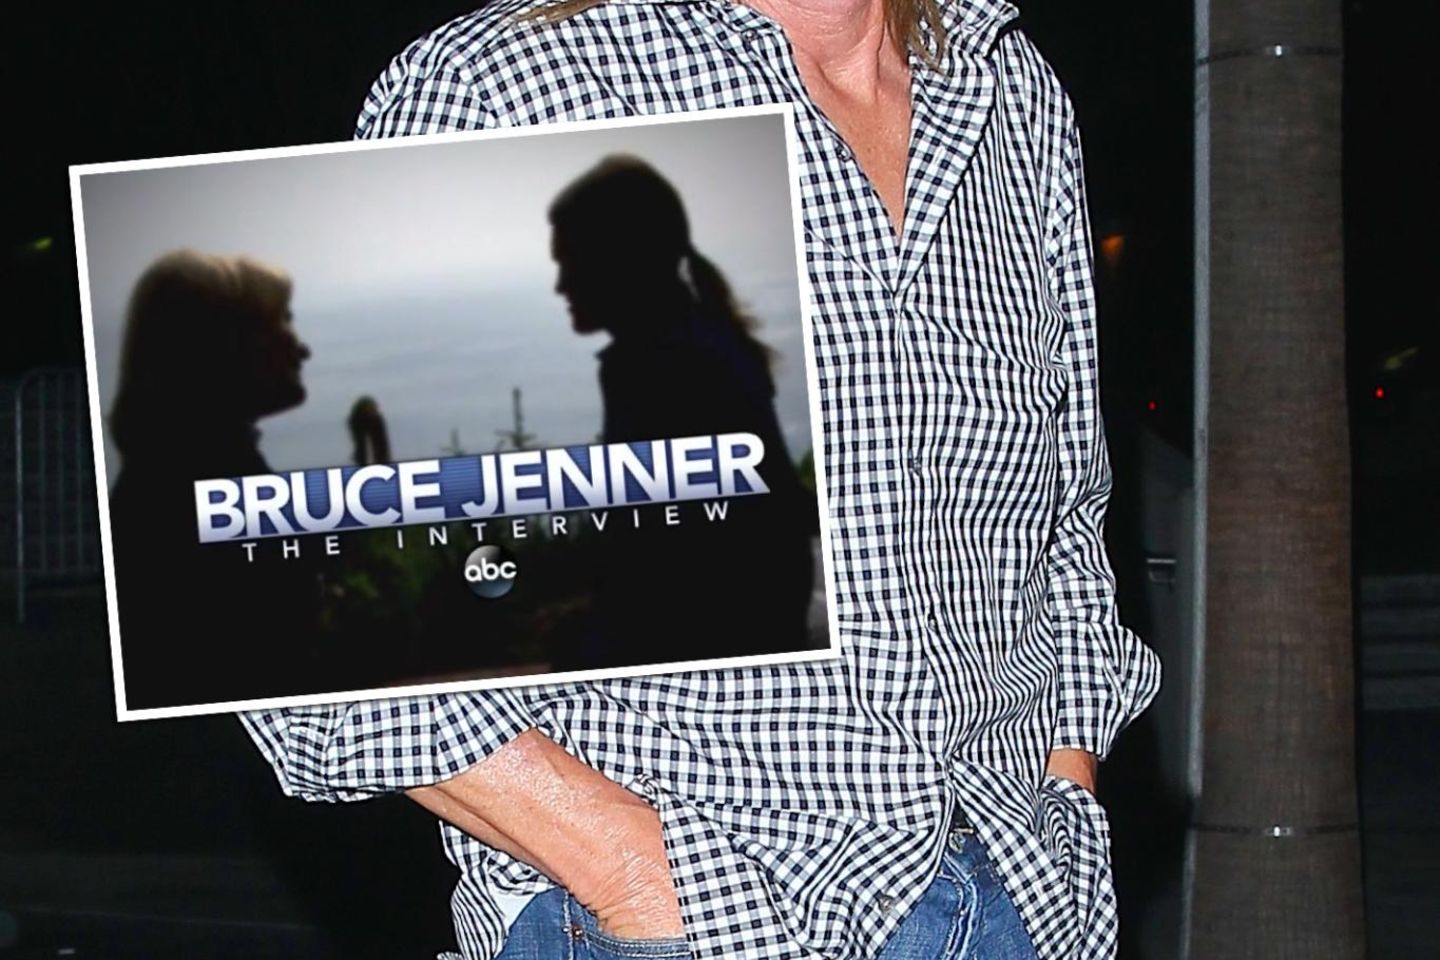 Bruce Jenner